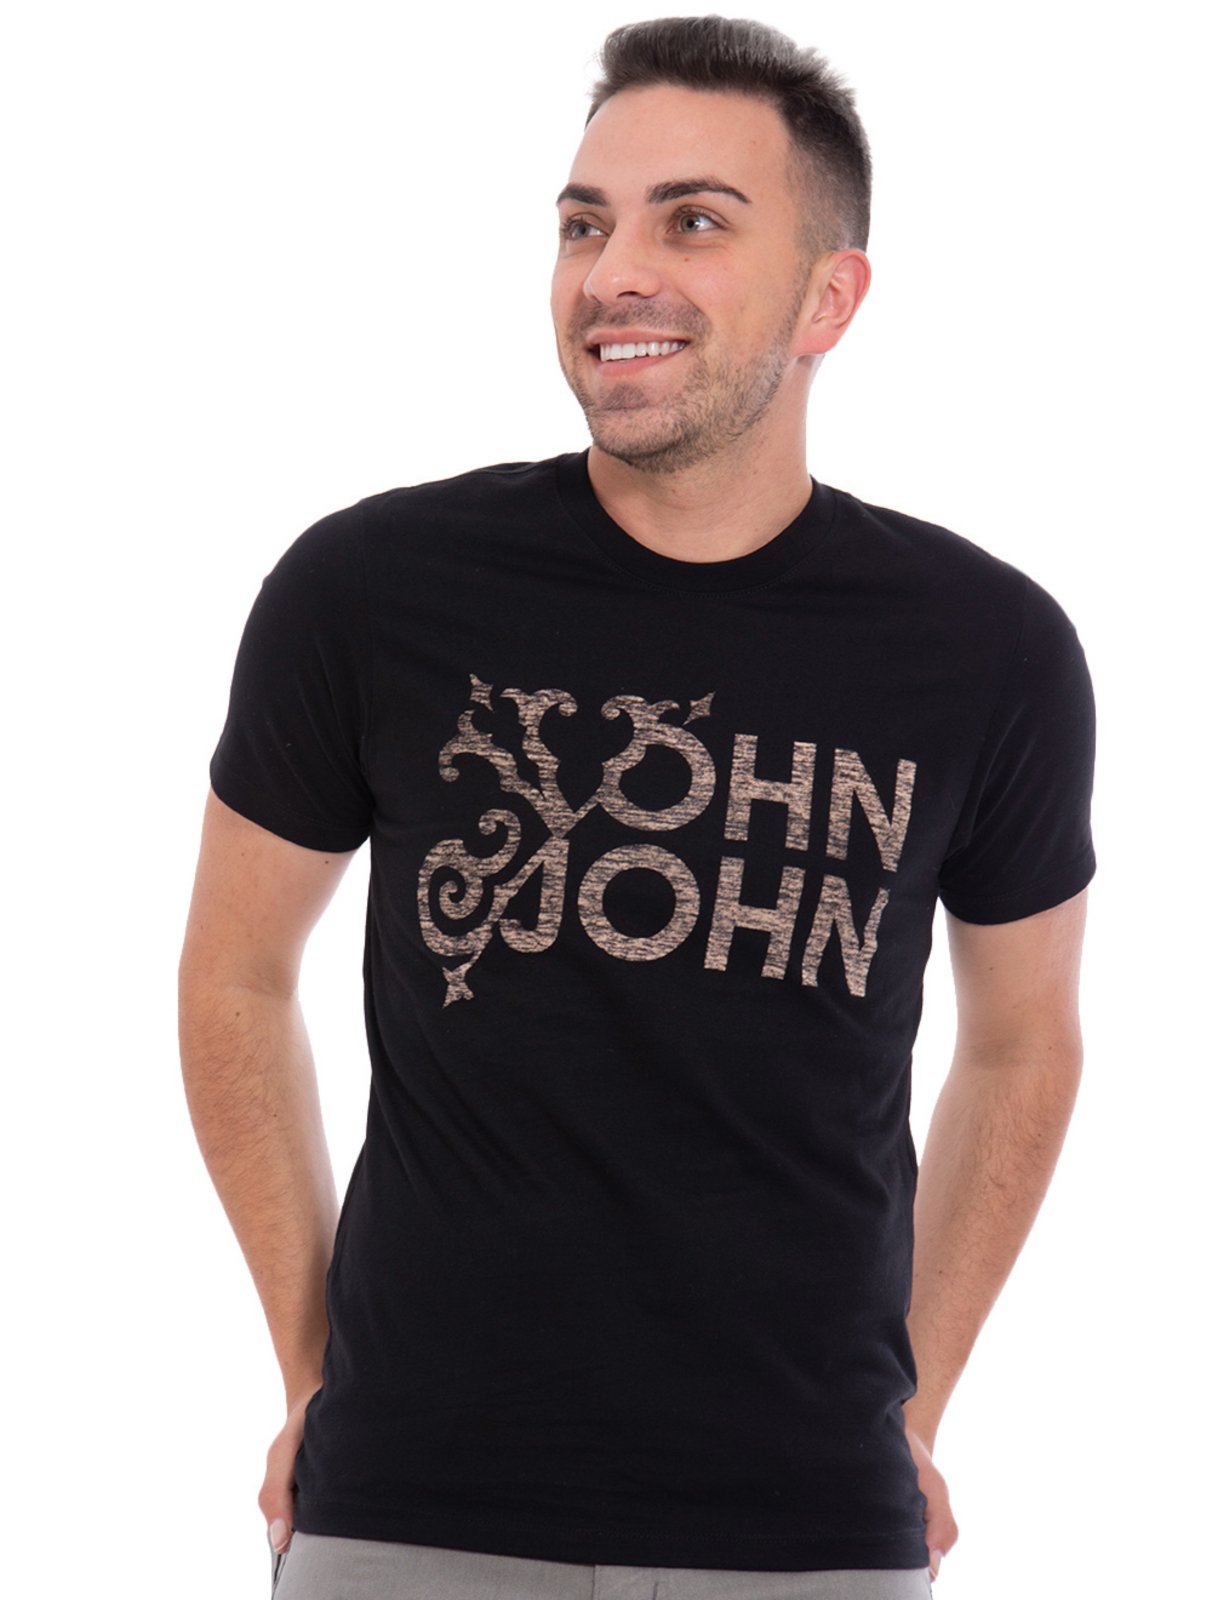 Camiseta John John Logo Preto - Outlet360